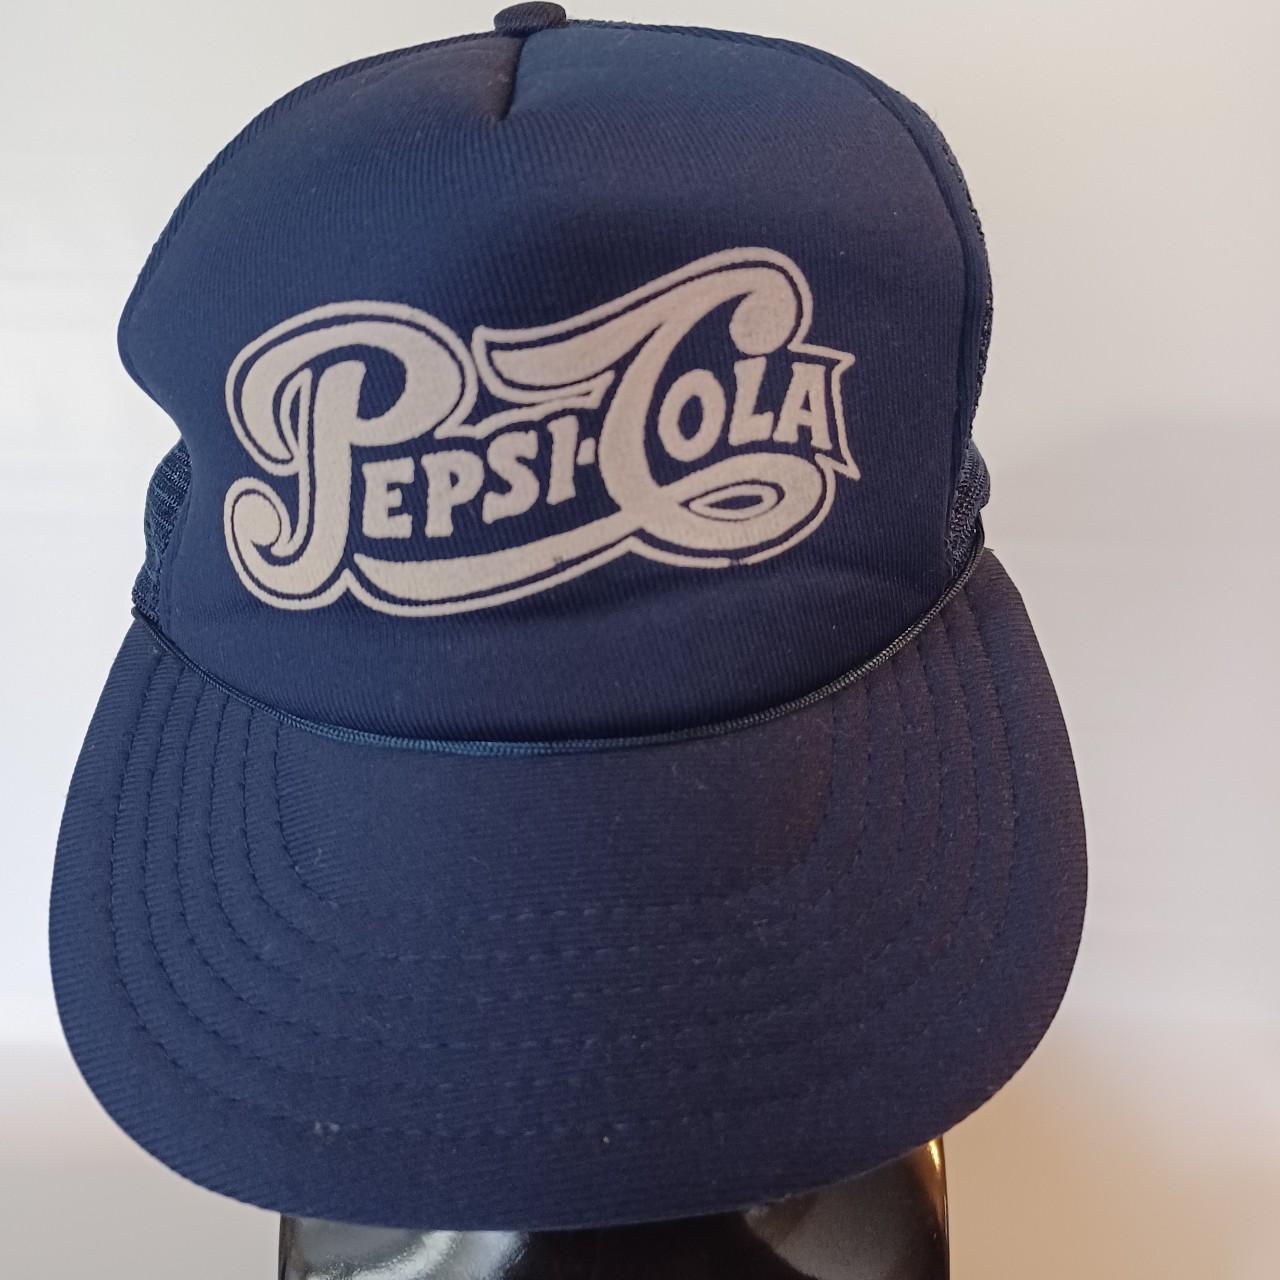 Pepsi Cola Truckers Snapback Mesh Hat. Vintage 90s... - Depop